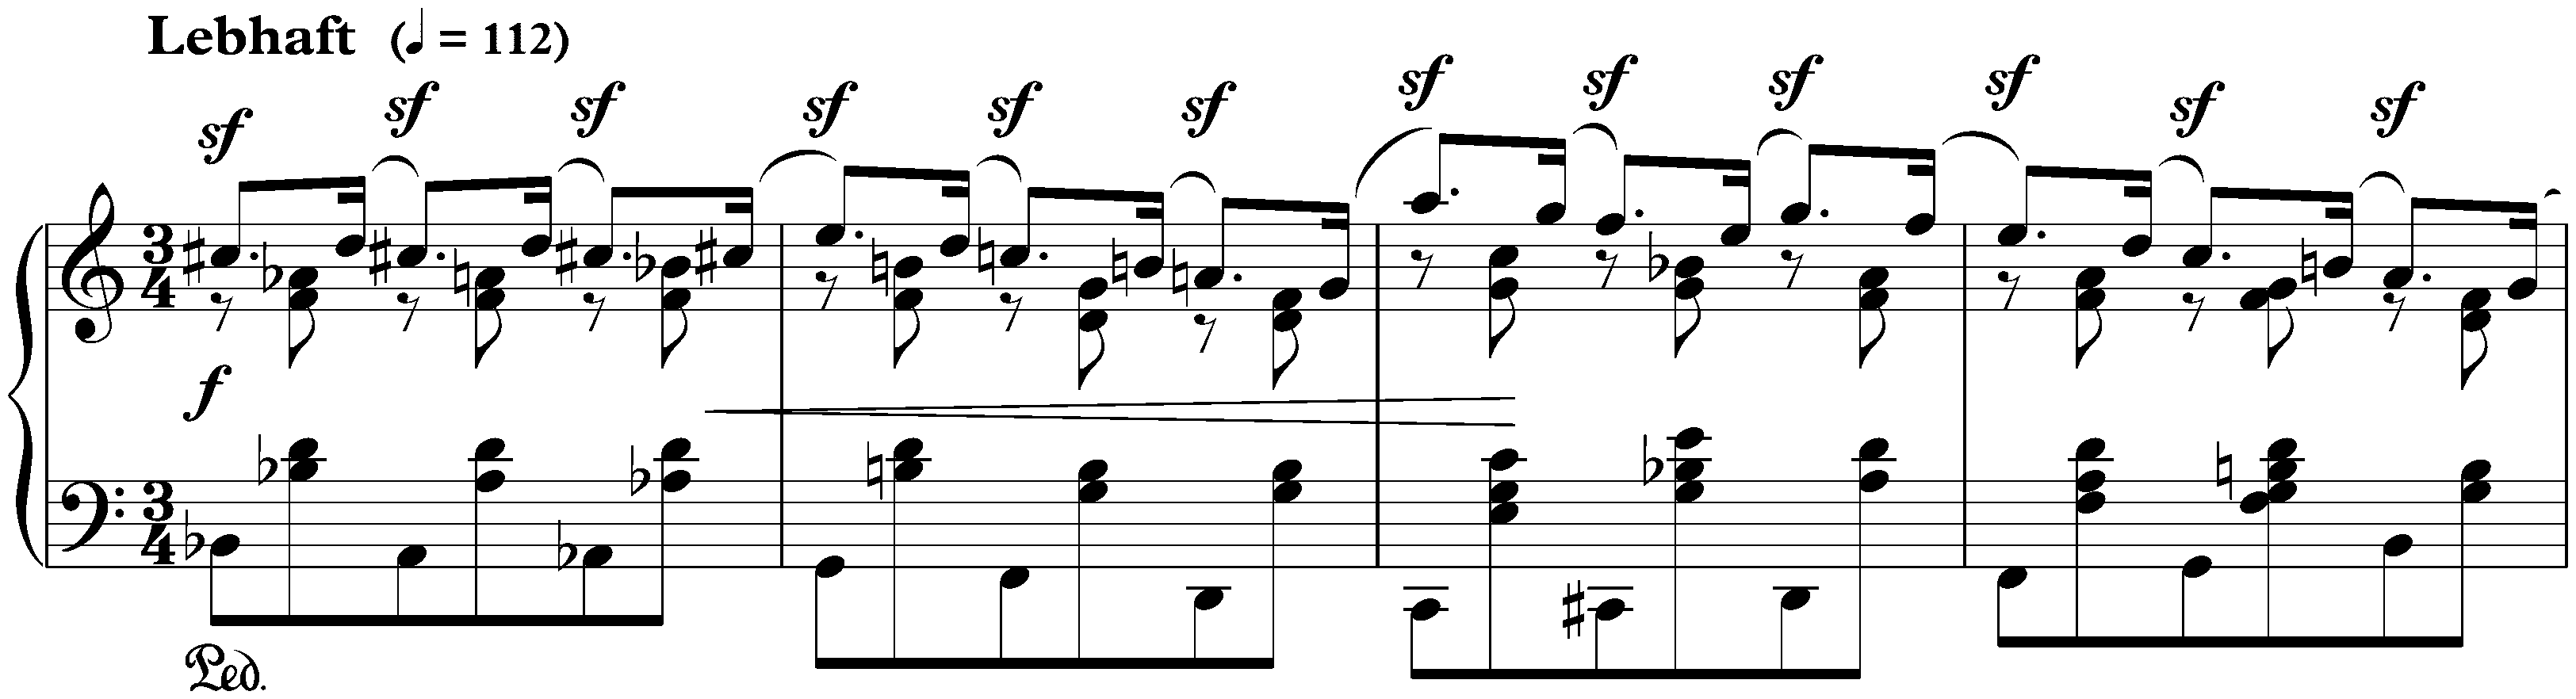 Davidsbündlertänze, op. 6; 9. Lebhaft